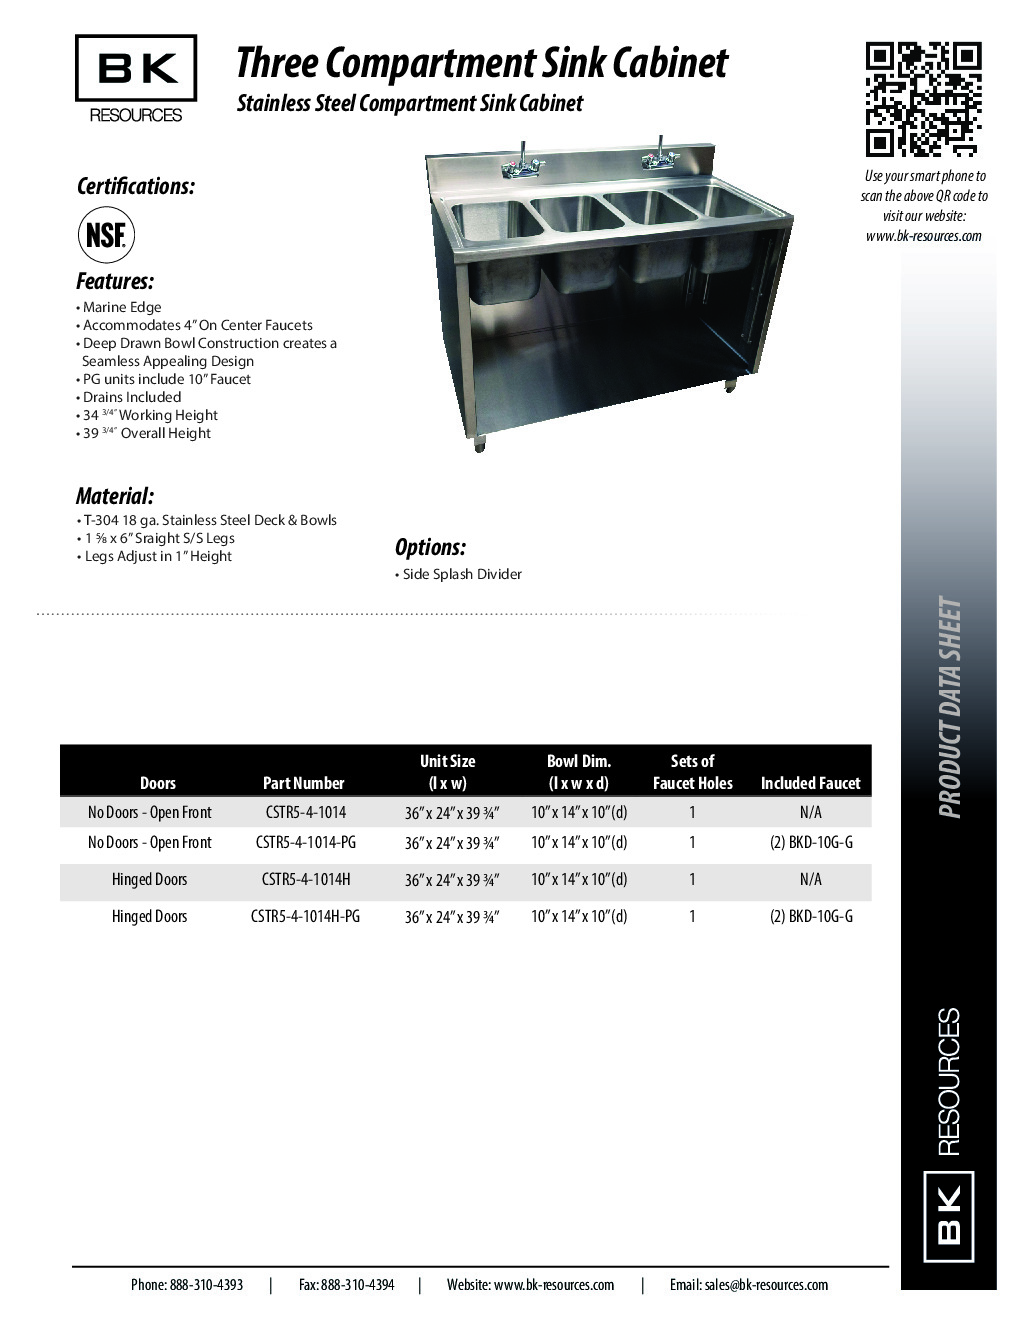 BK Resources CSTR5-4-1014H (4) Four Compartment Sink